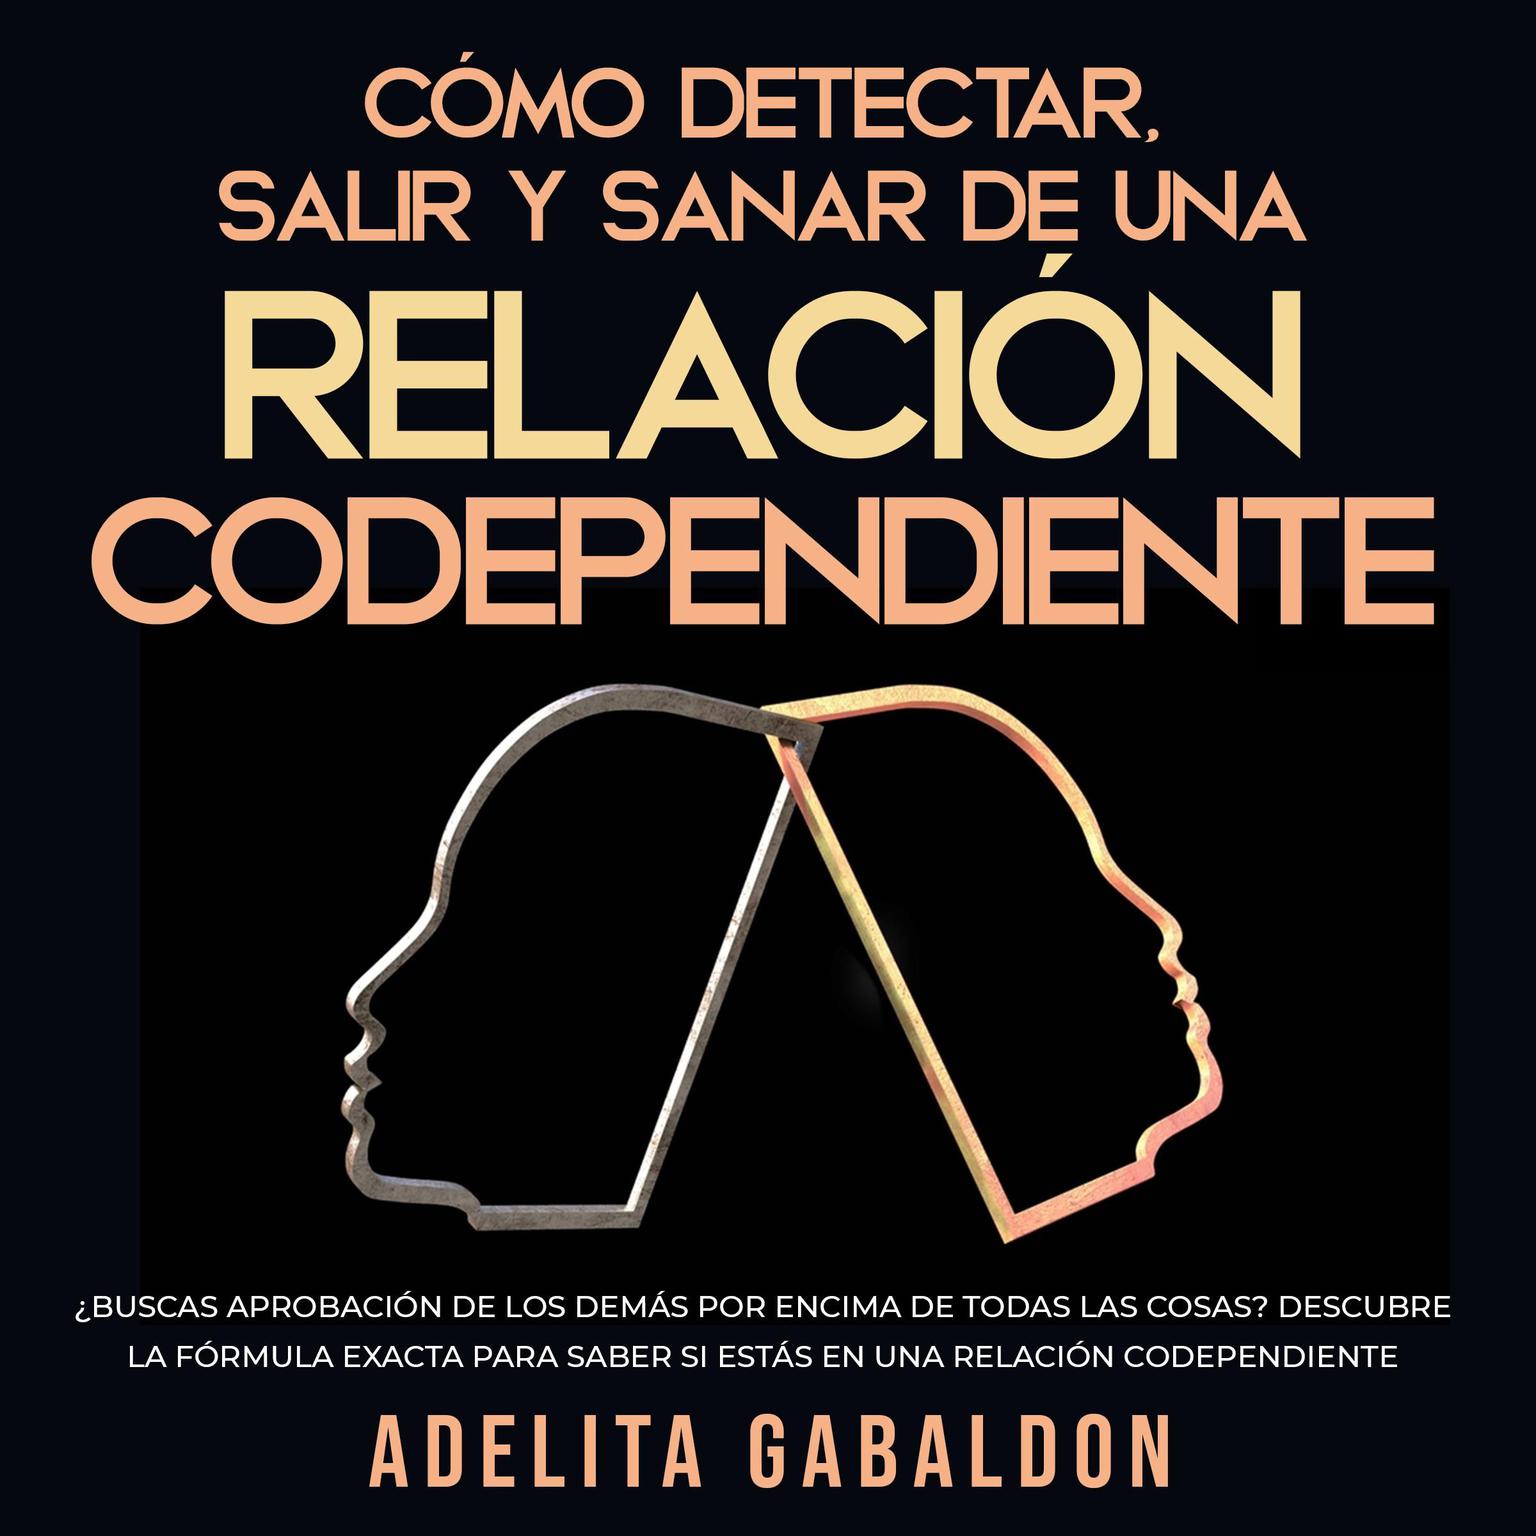 Cómo detectar, salir y sanar de una relación codependiente Audiobook, by Adelita Gabaldon